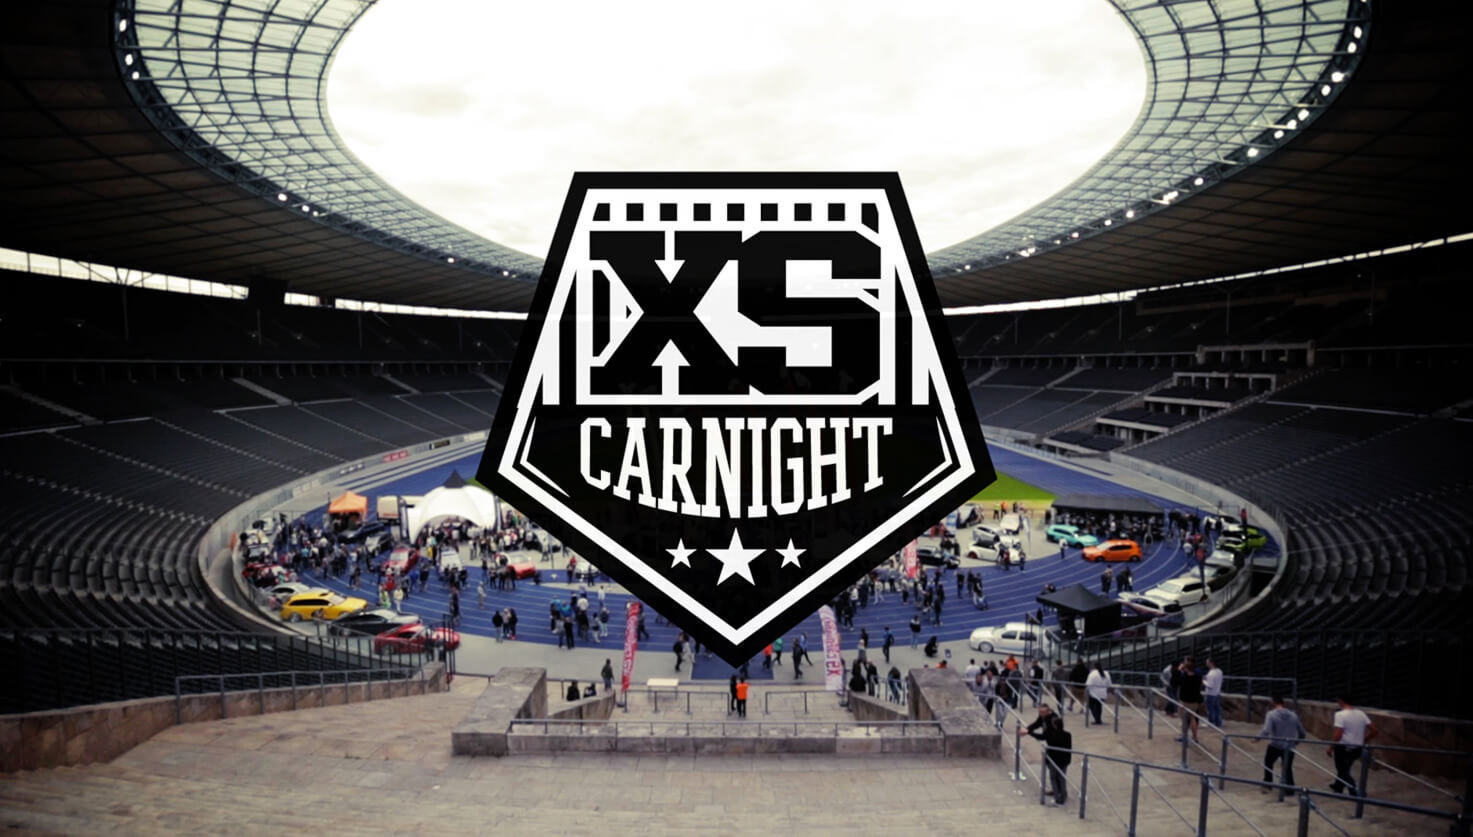 XS Carnight 2018